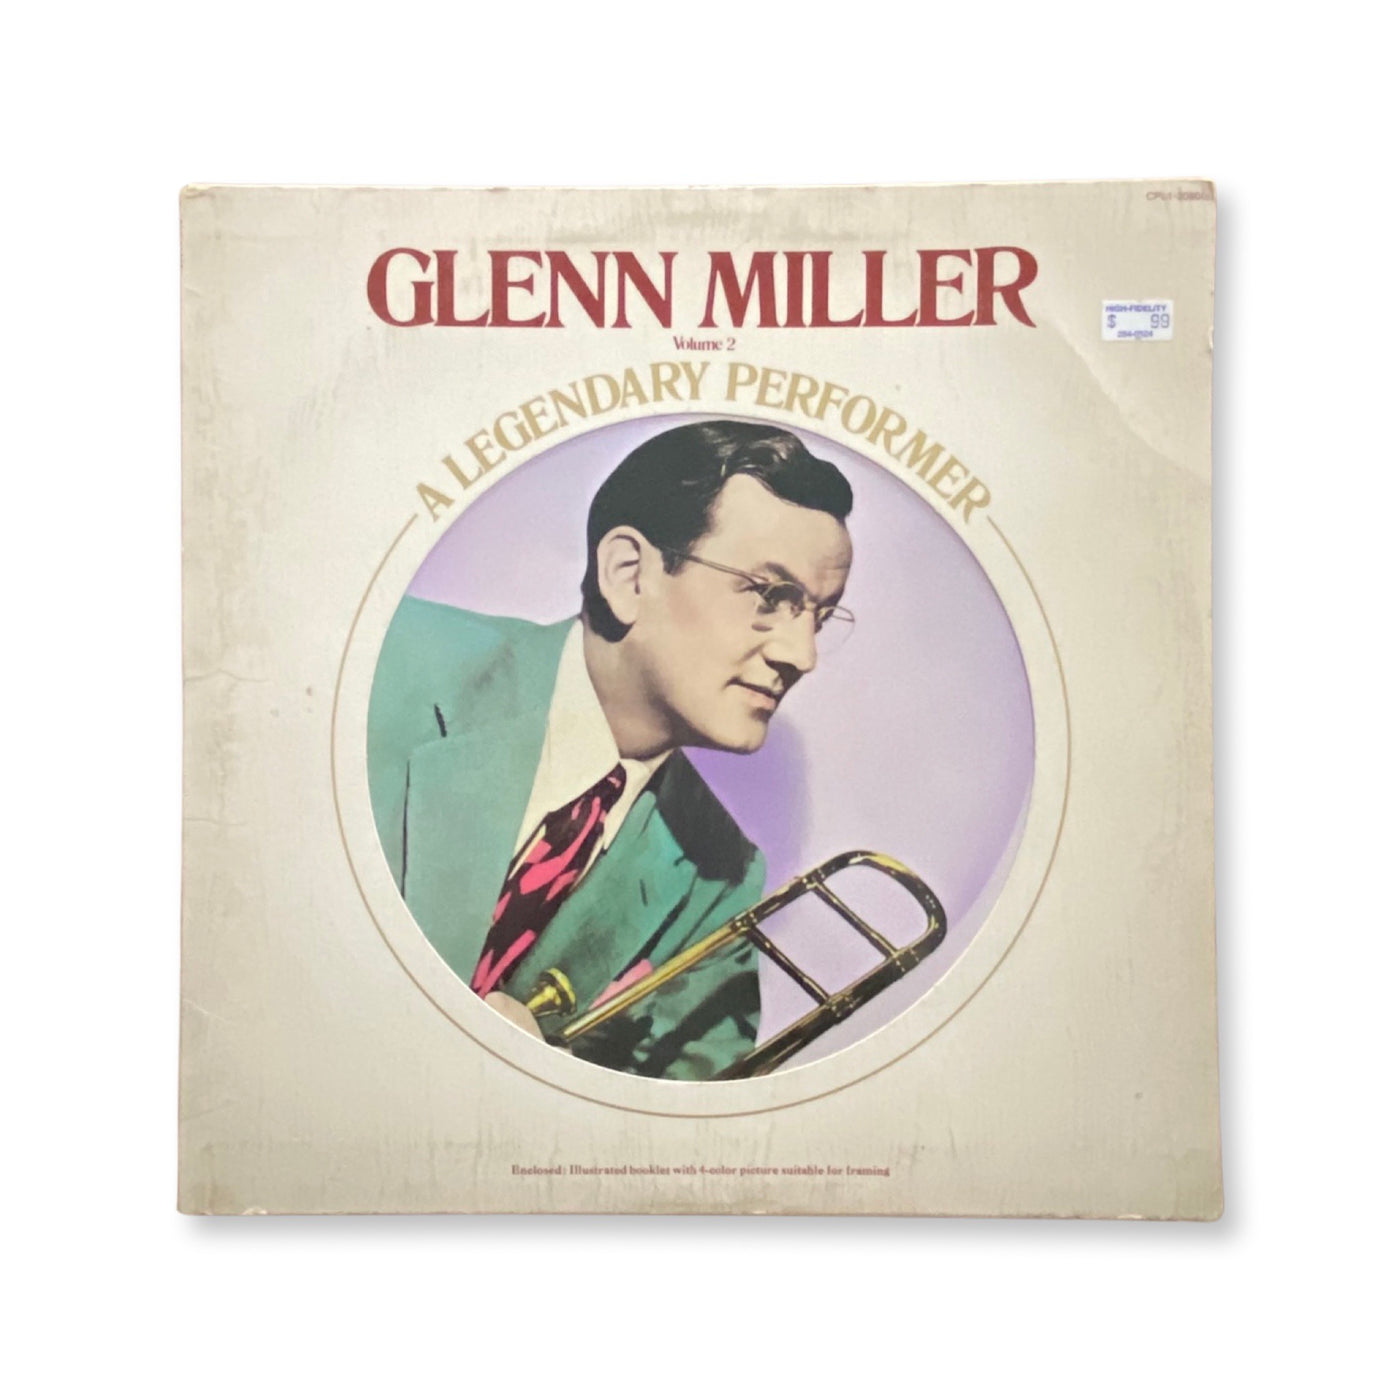 Glenn Miller - A Legendary Performer Volume 2